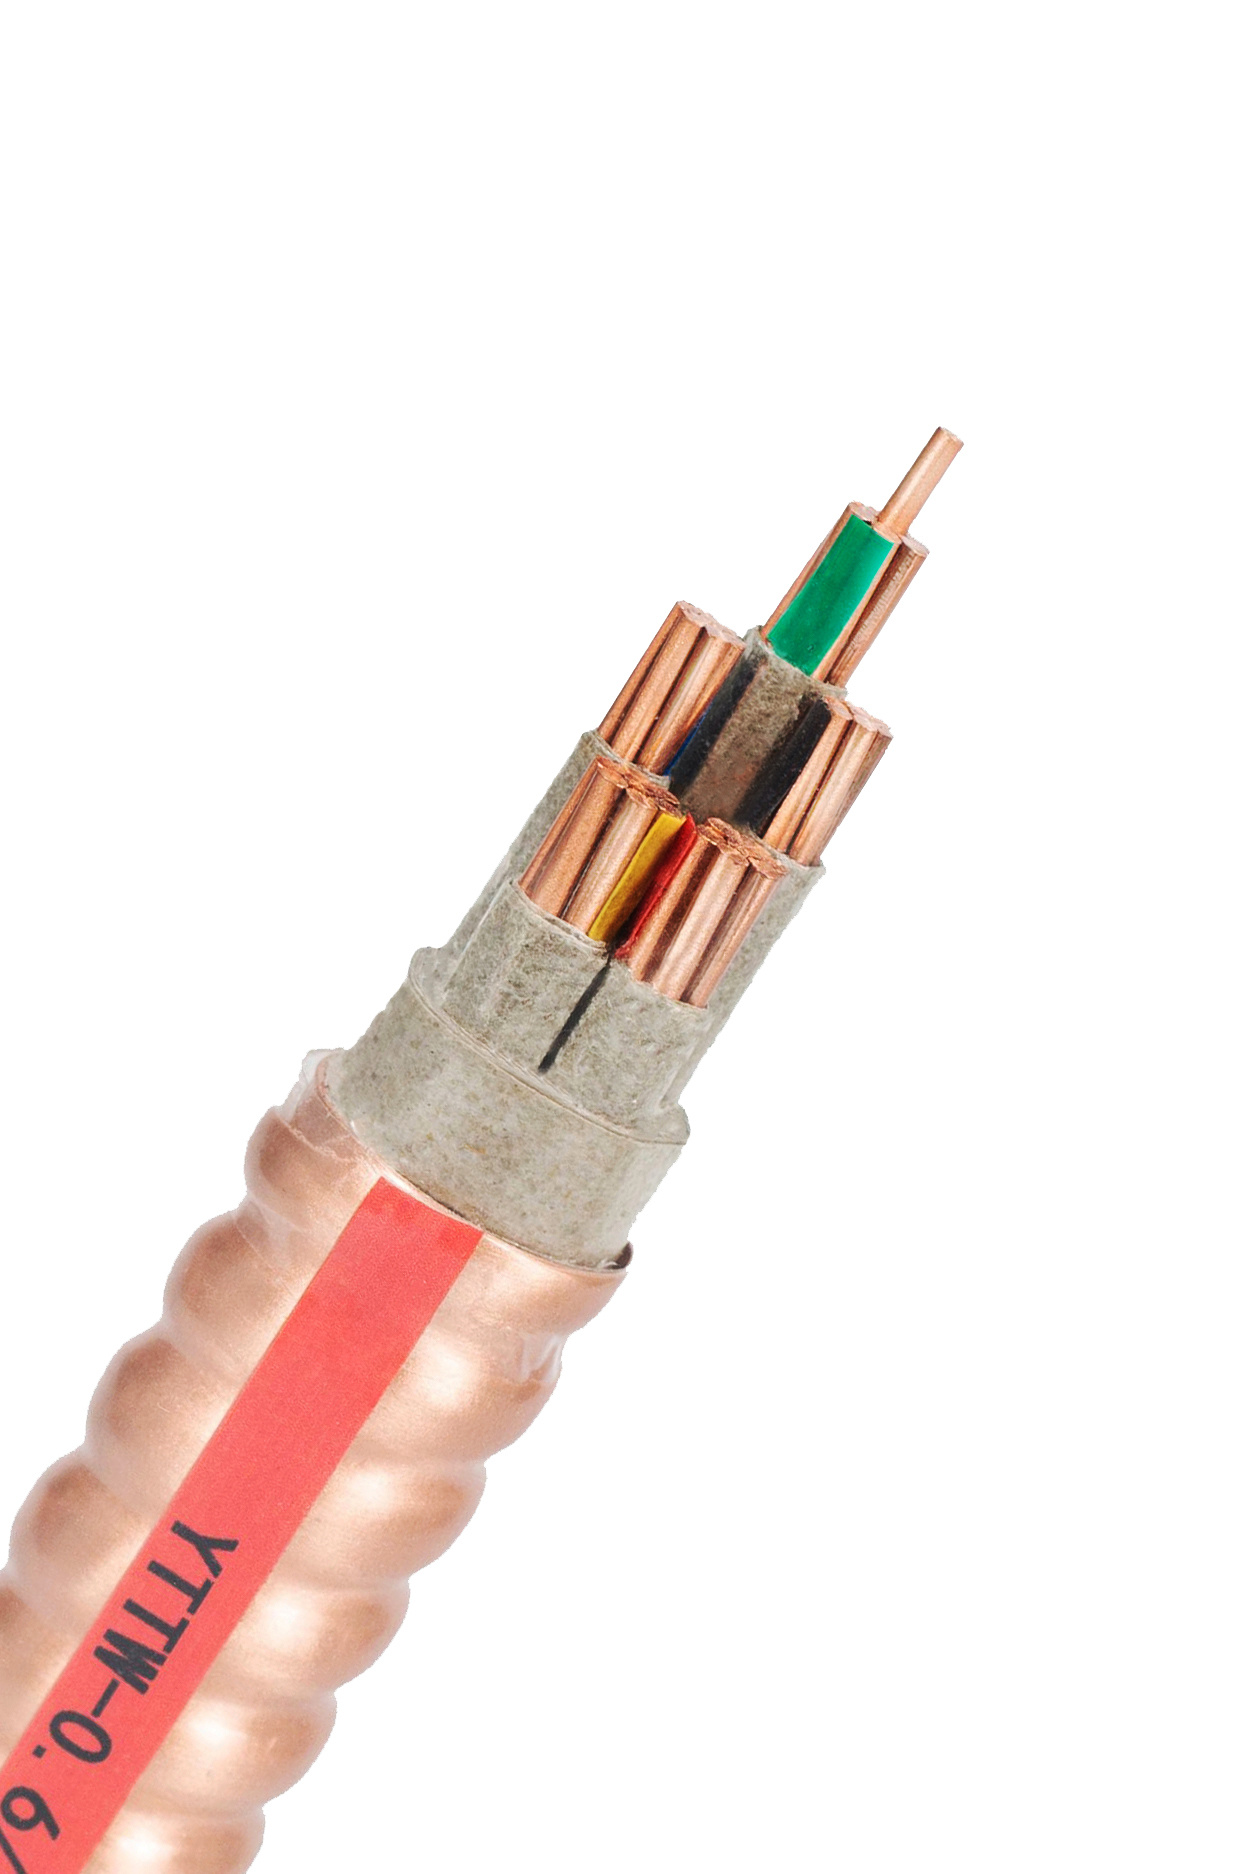 
                500 mcm используйте-2, Rhw-2 или короткого замыкания XLPE Rhh медный проводник тепла и Влагостойкие Негорючий 600V кабель
            